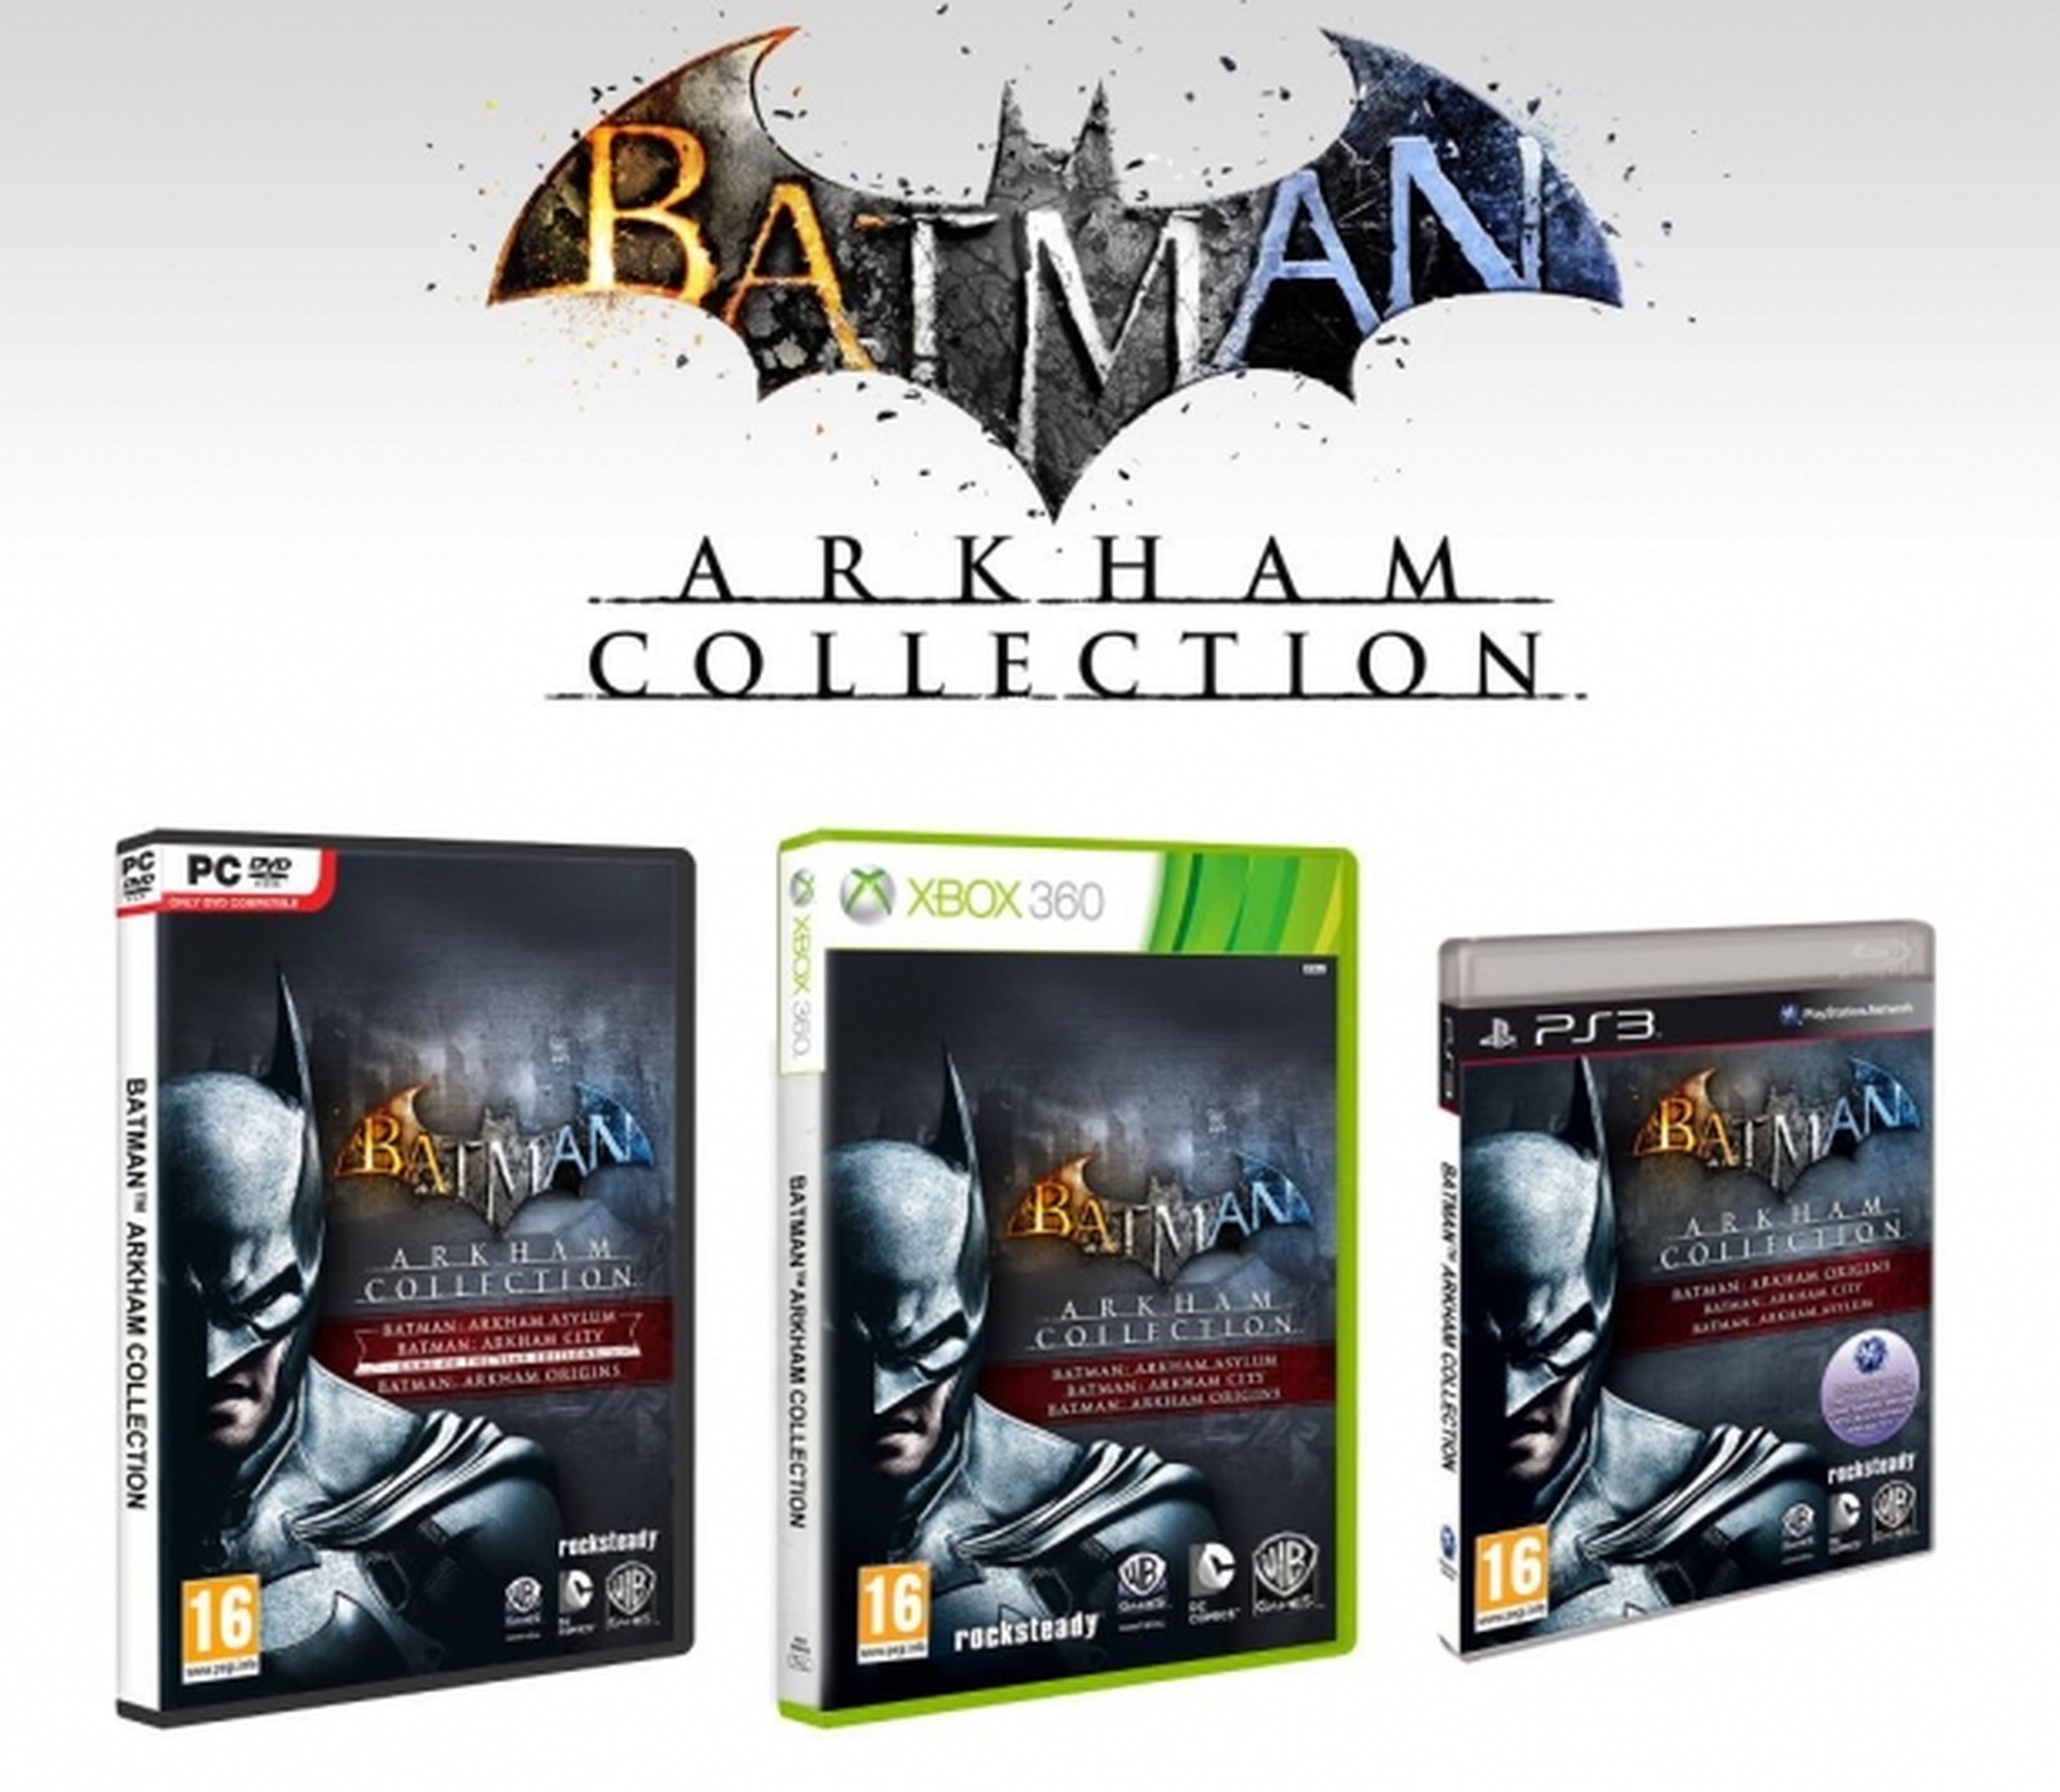 Batman Arkham Collection anunciado para PS3, 360 y PC